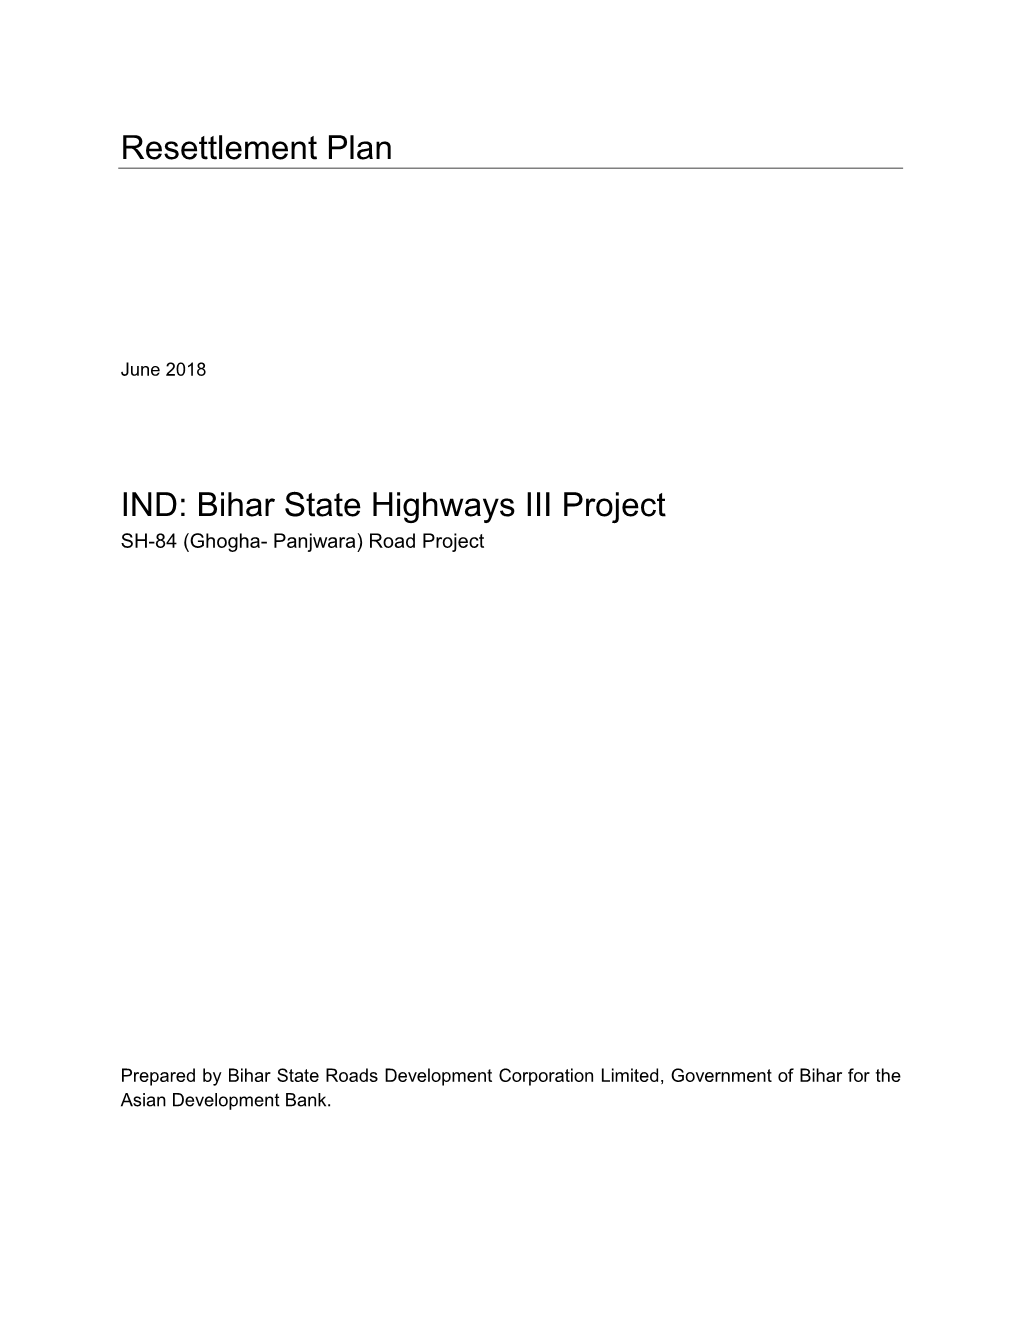 Resettlement Plan IND: Bihar State Highways III Project